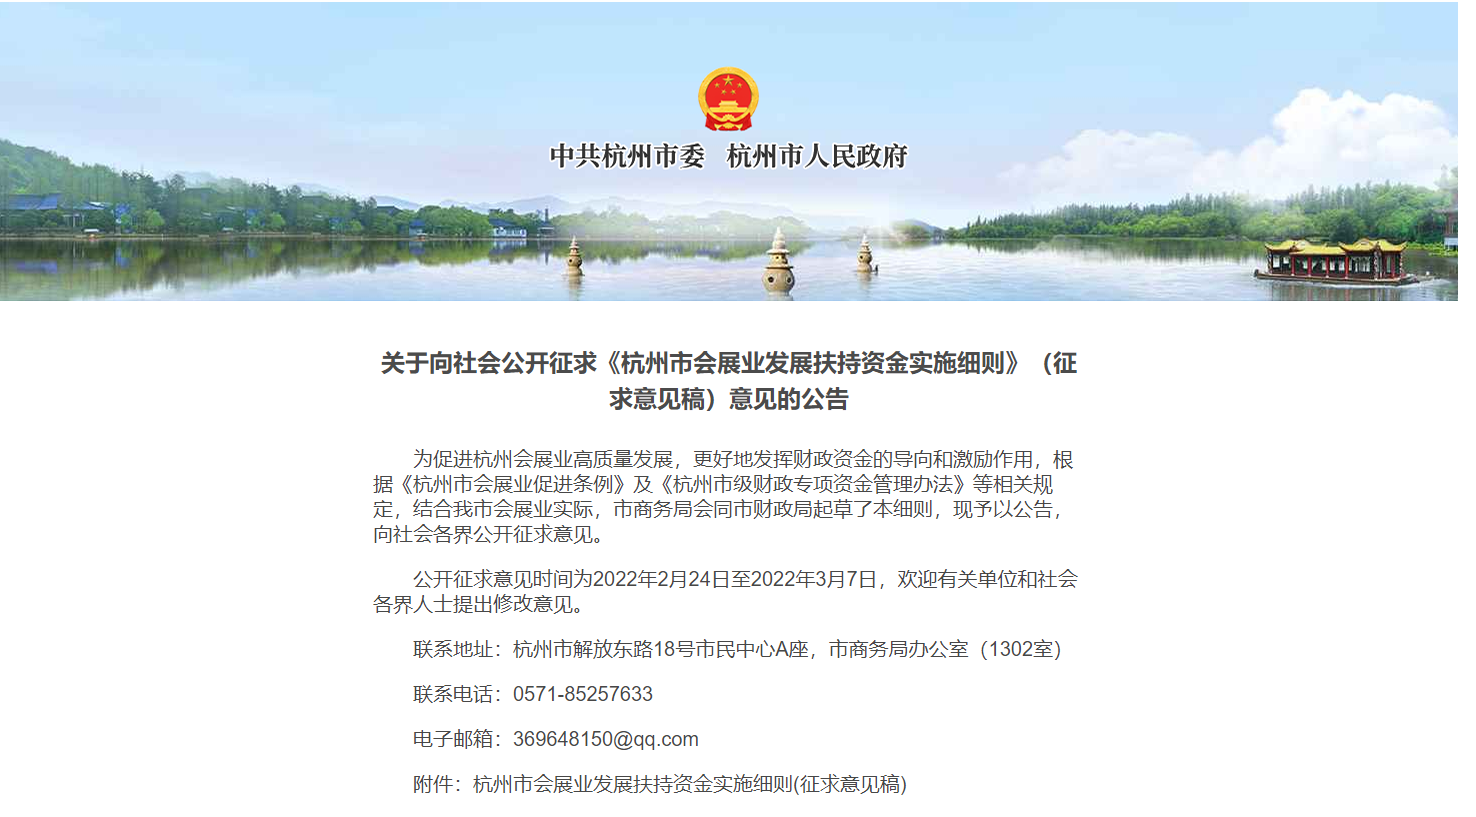 《杭州市会展业发展扶持资金实施细则》（征求意见稿）